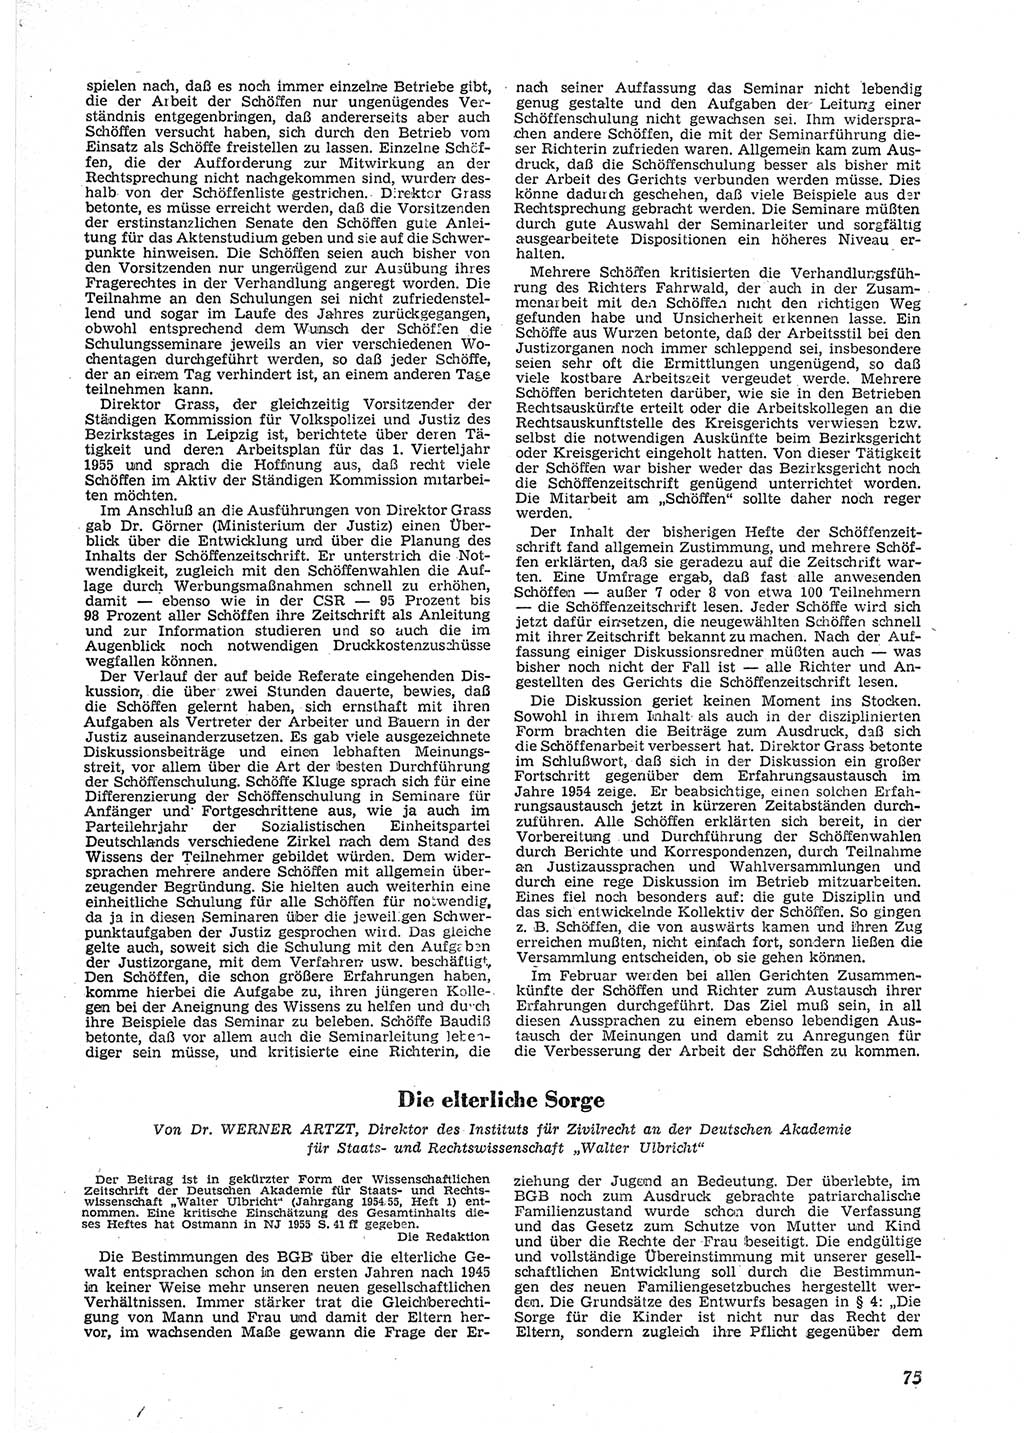 Neue Justiz (NJ), Zeitschrift für Recht und Rechtswissenschaft [Deutsche Demokratische Republik (DDR)], 9. Jahrgang 1955, Seite 75 (NJ DDR 1955, S. 75)